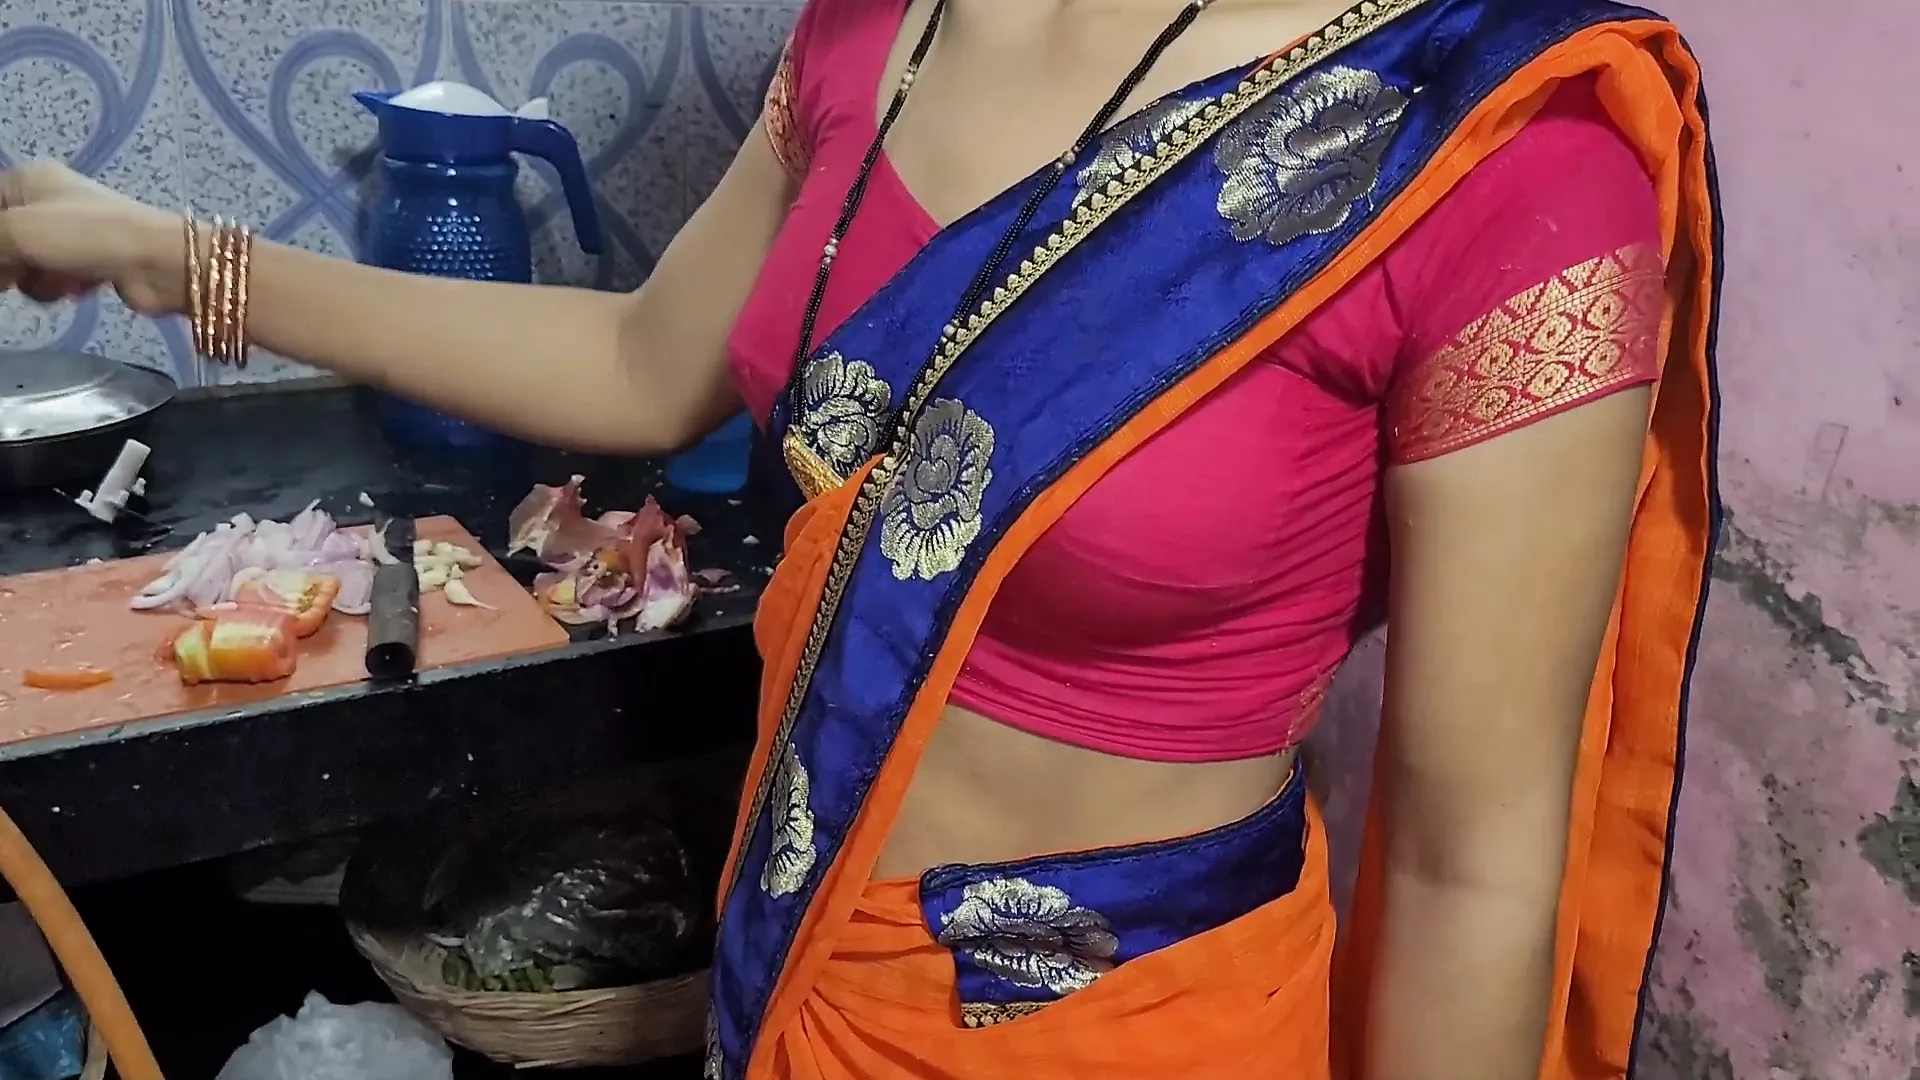 Hot Xxx Bhabhi With Devar Hard Porn Saree - Desi Bhabhi Kitchen Me Khana Bana Rahi Thi Tabhi Devar Ne Piche Le Bhabhi  Ki | xHamster